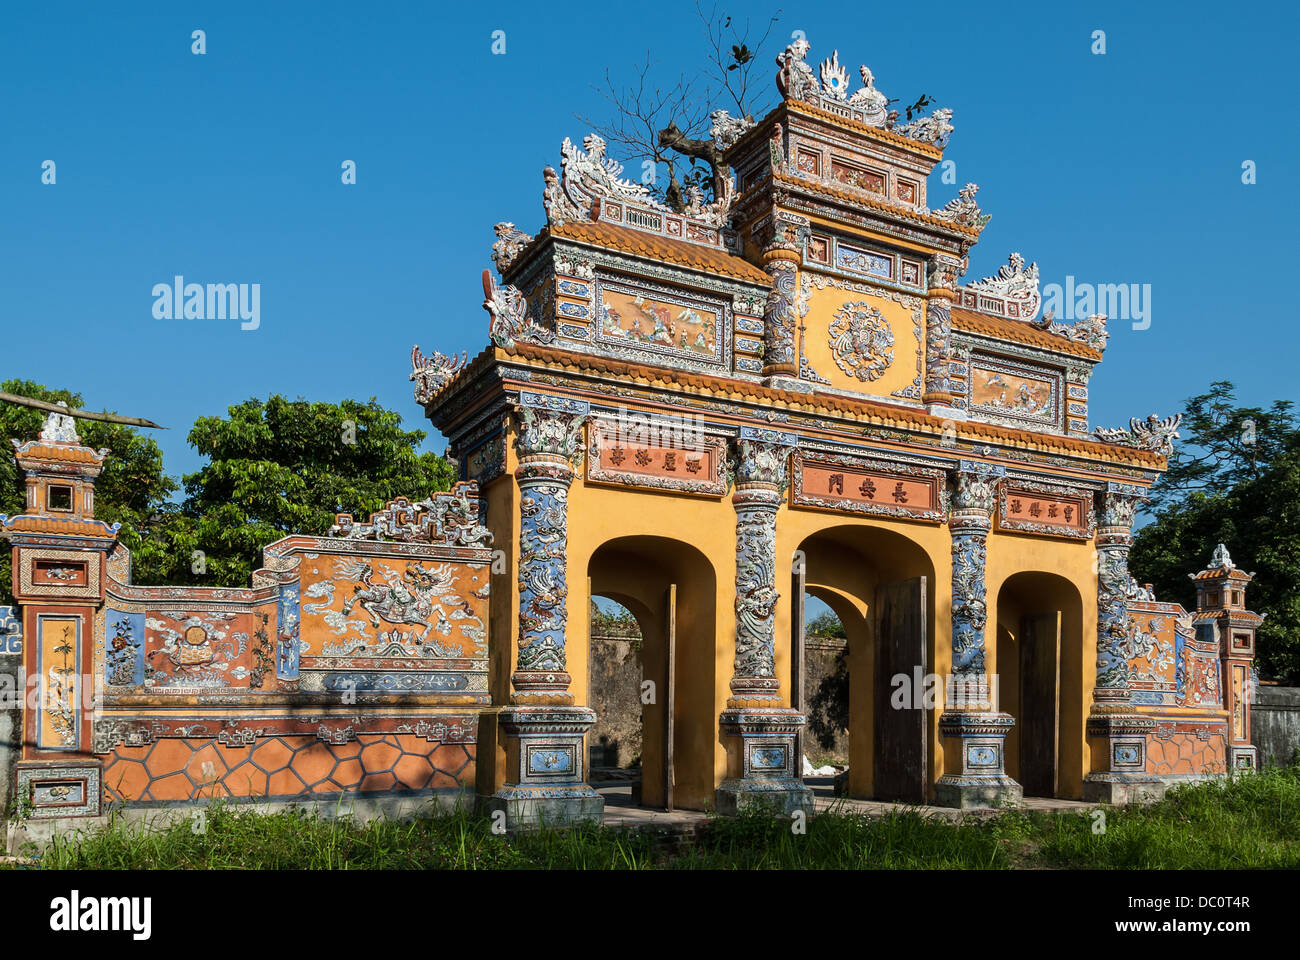 Einer der prächtigsten und gut erhaltene Gateways in das von der UNESCO geschützte alte Kaiserstadt Hue, Vietnam Stockfoto